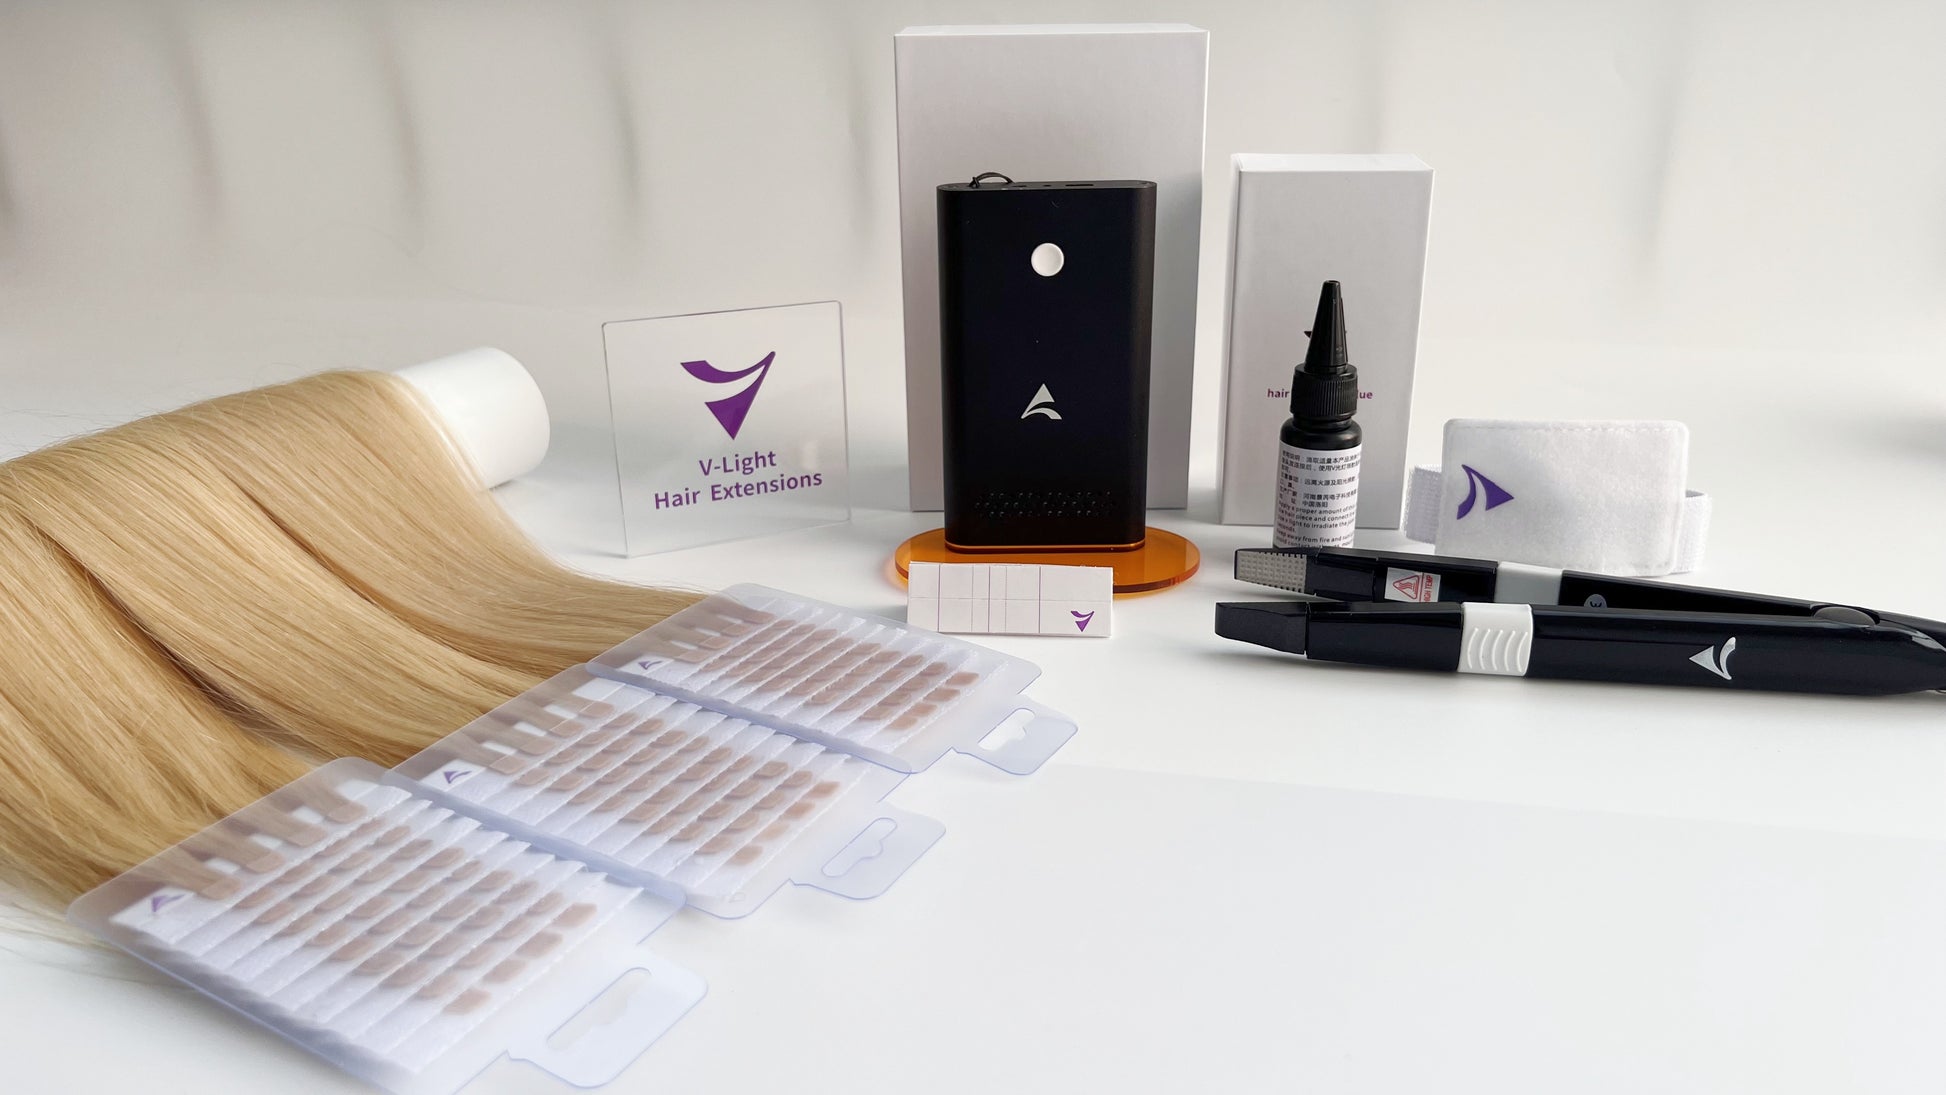 V-LIGHT special hair extension piece – V-light hair extensions